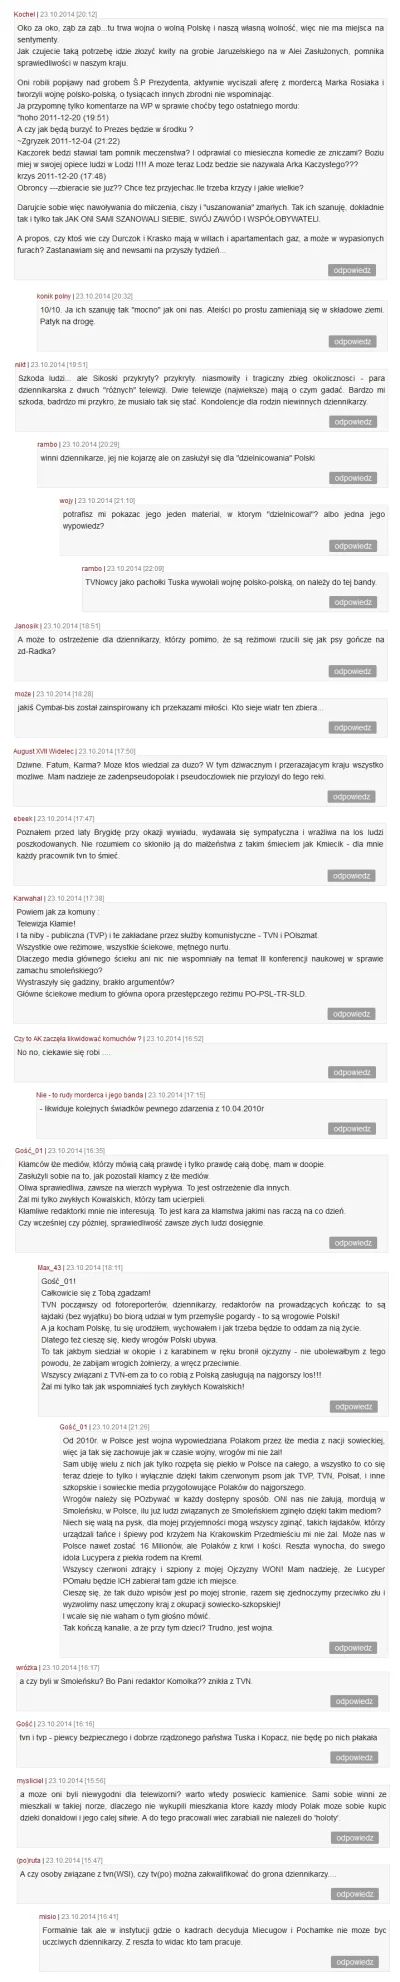 Dredu - Polecam komentarze odnośnie śmierci Kmiecików z najlepszego, najbardziej patr...